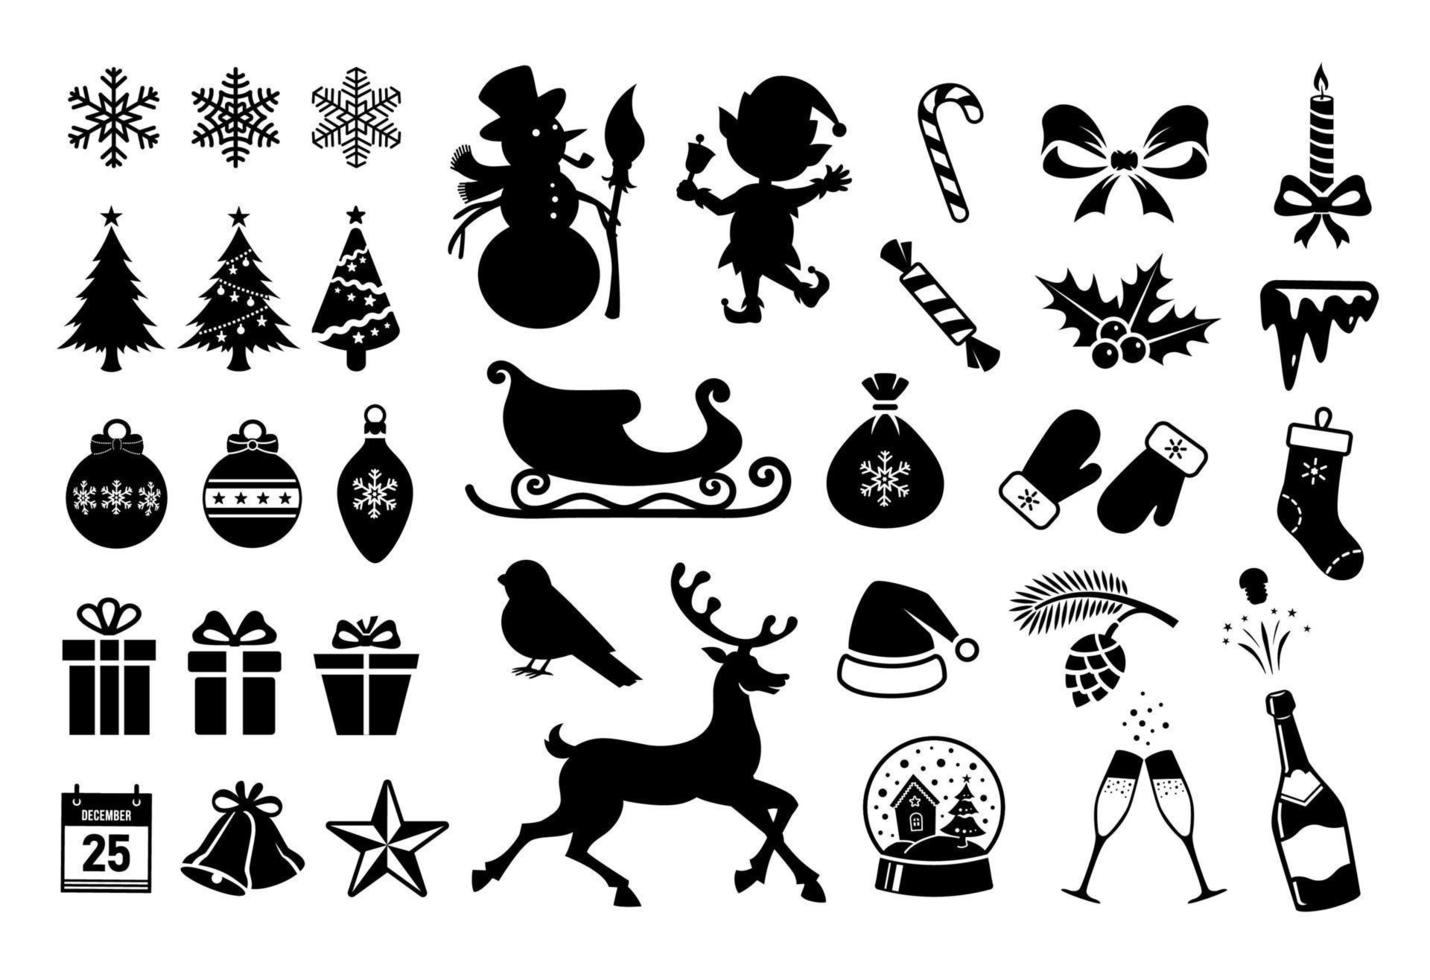 Weihnachtssymbole. Weihnachtsschattenbilder lokalisiert auf weißem Hintergrund. Vektor-Winter-Aufkleber. schneeflocken, weihnachtsbaum, kugeln, flasche, vektorsilhouetten von elf, schneemann, hirsch. großes Weihnachtsset vektor